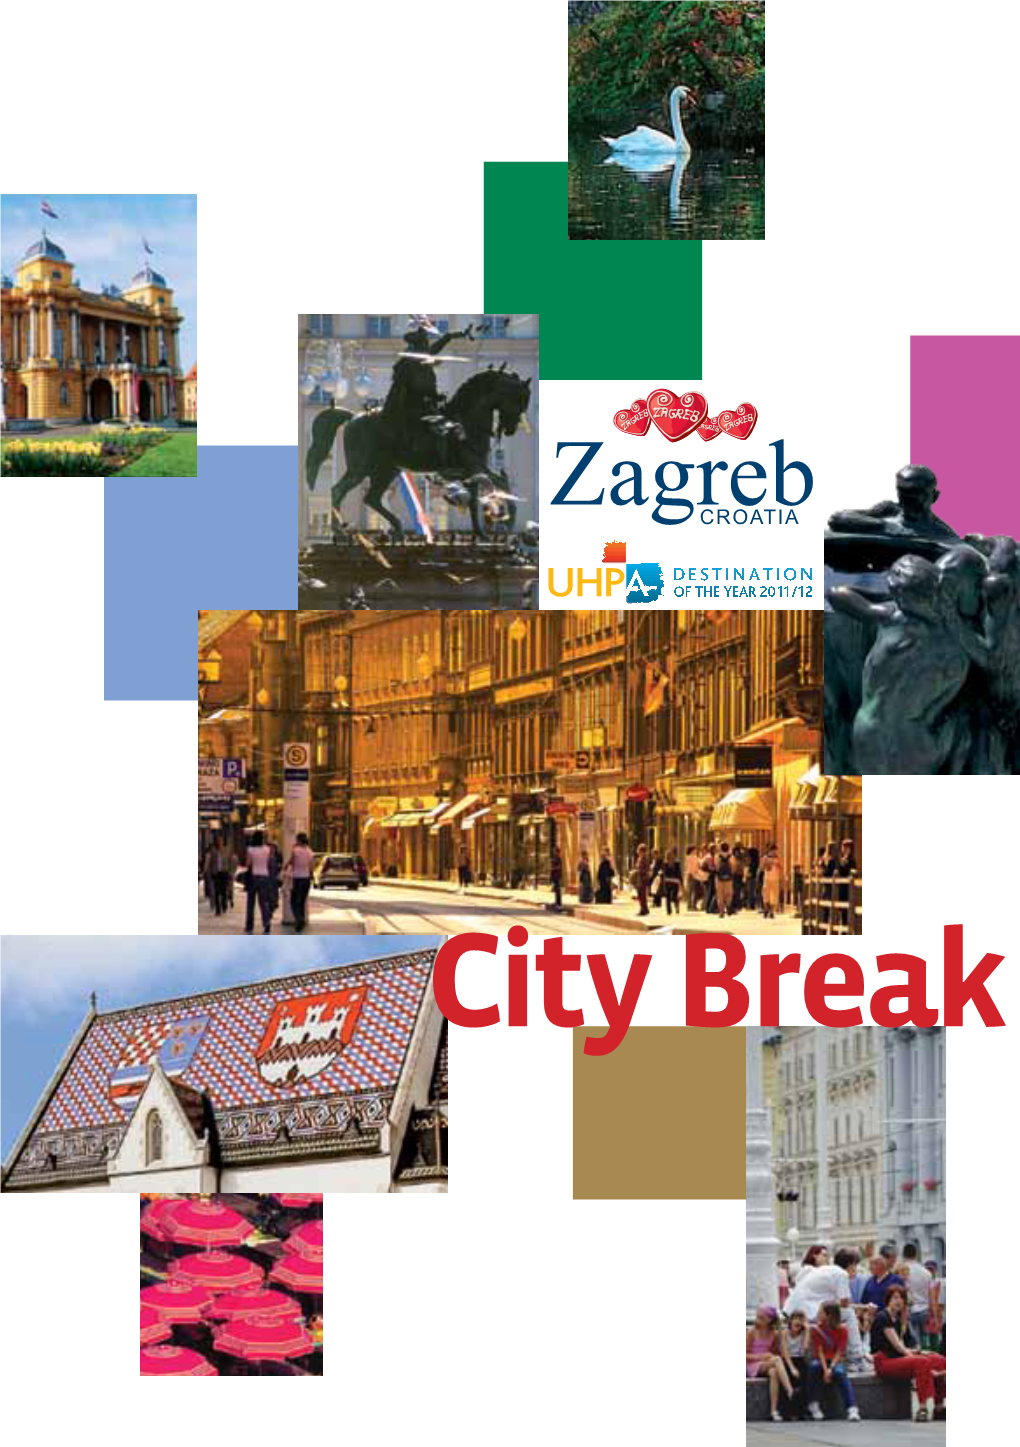 City Break 1 Zagreb City Break